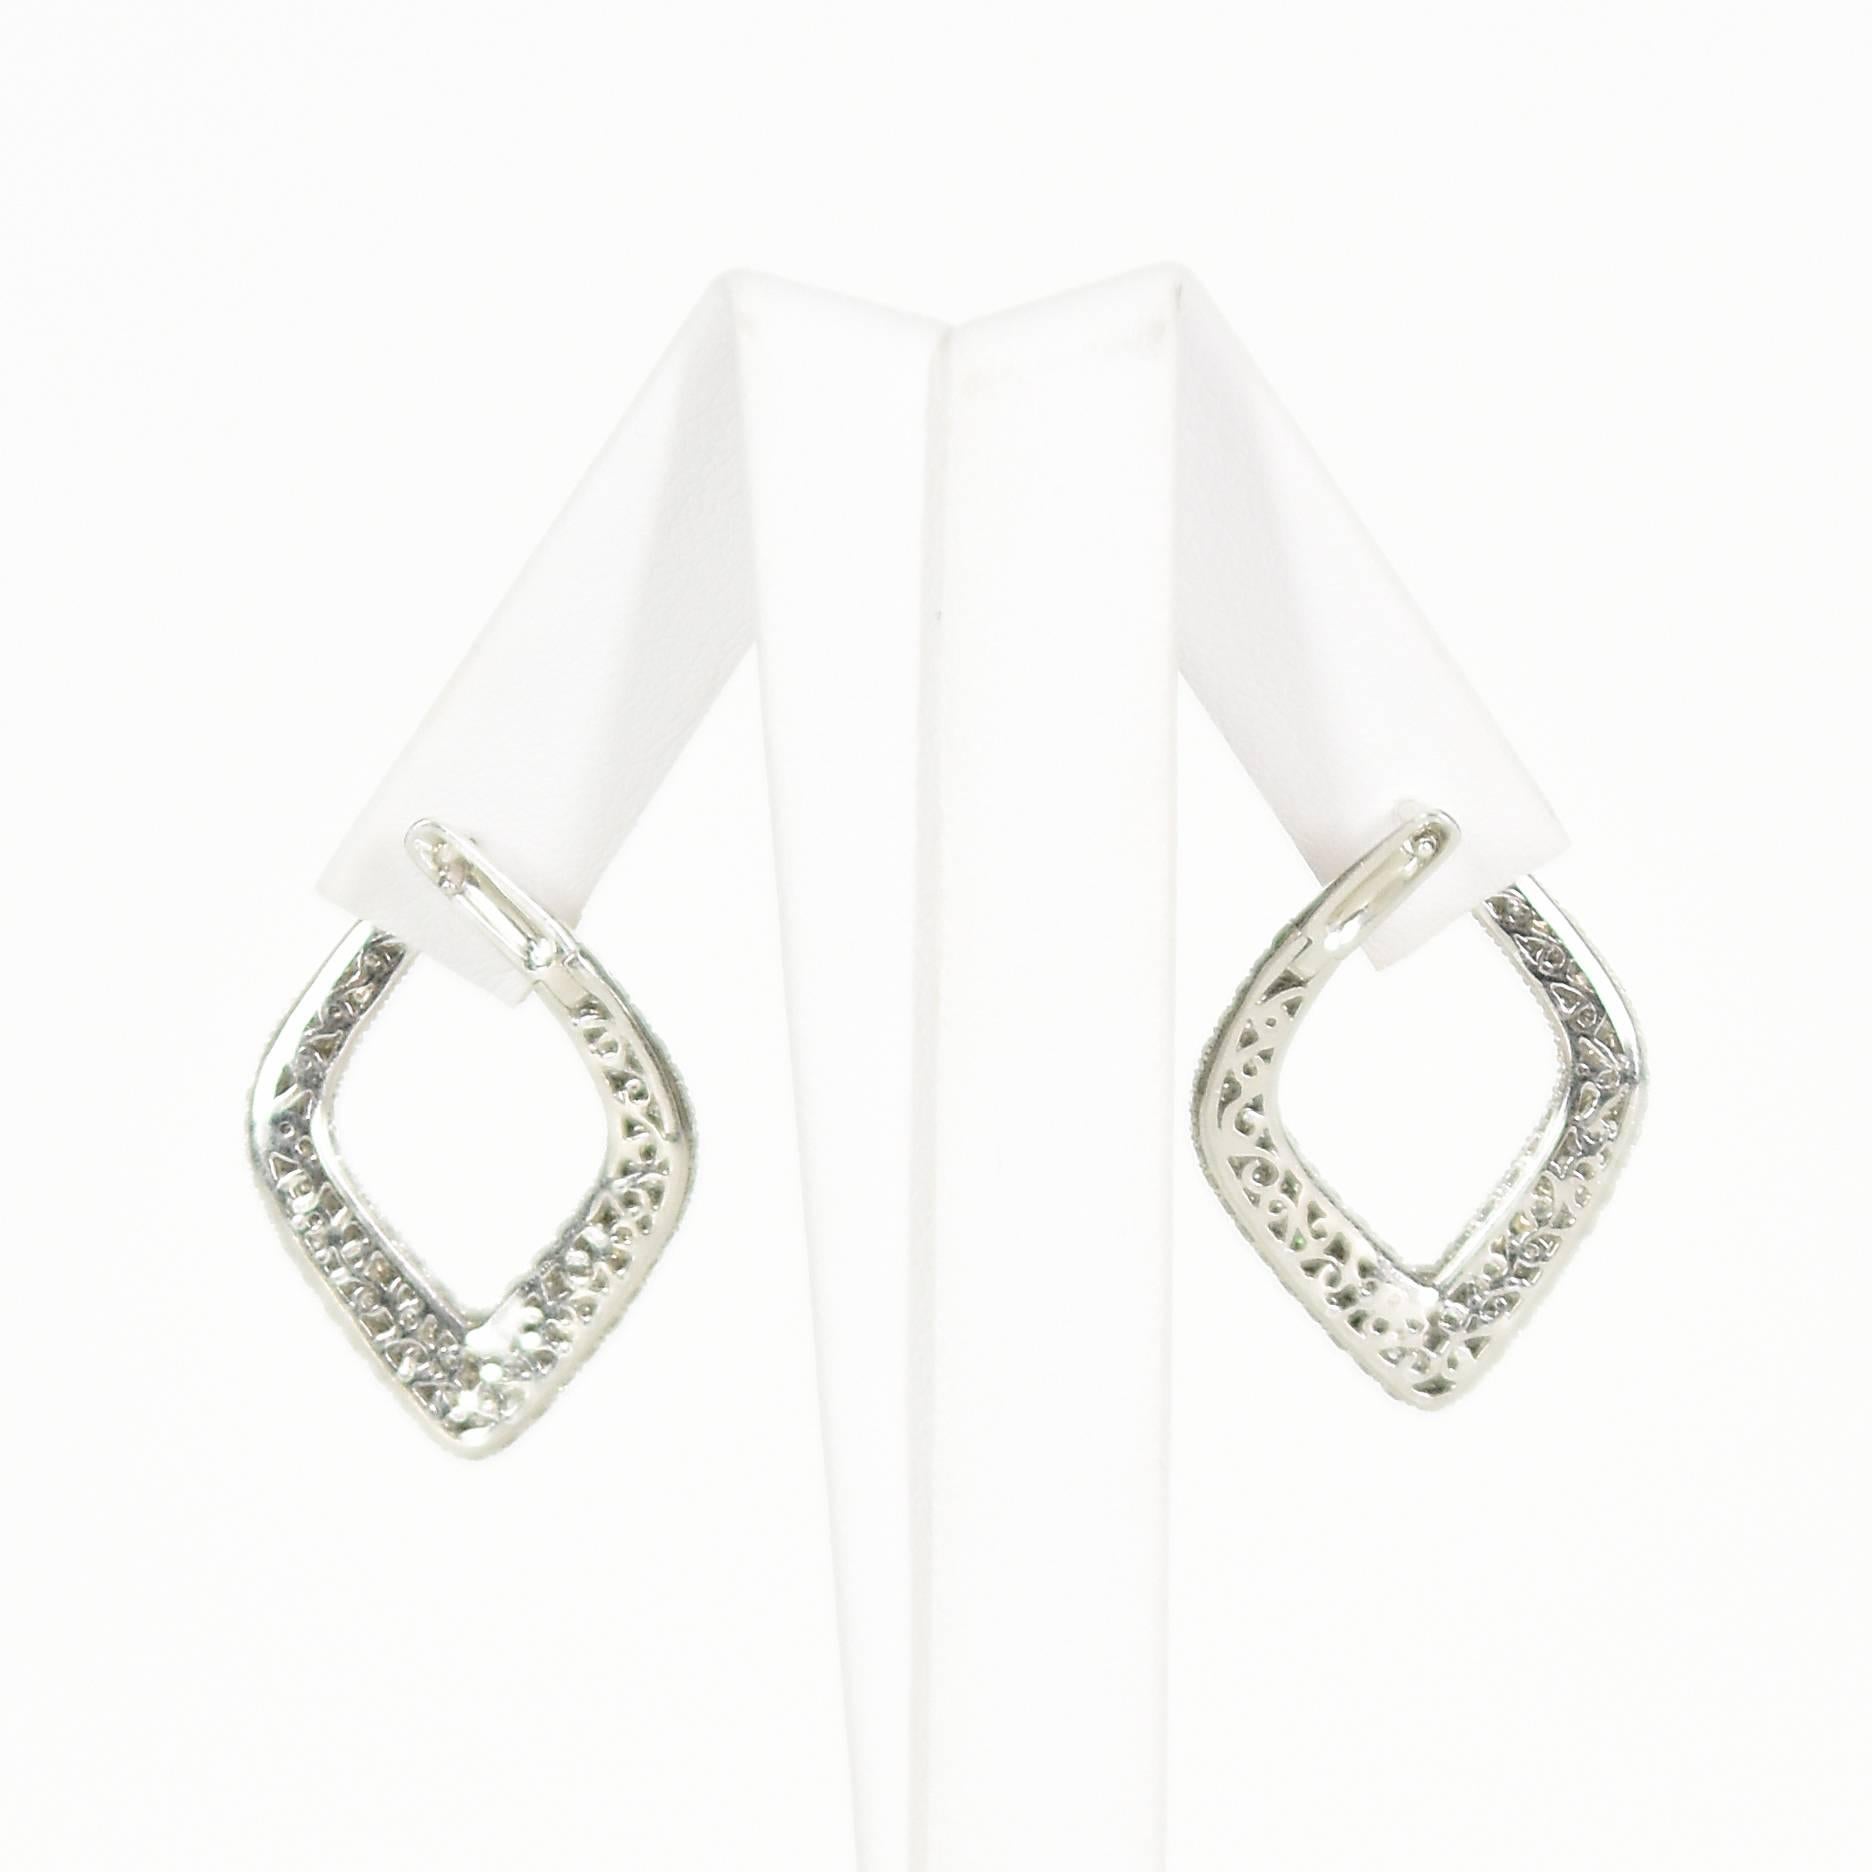 Modernist Triangular Diamond Earrings Set in 18 Carat White Gold For Sale 1